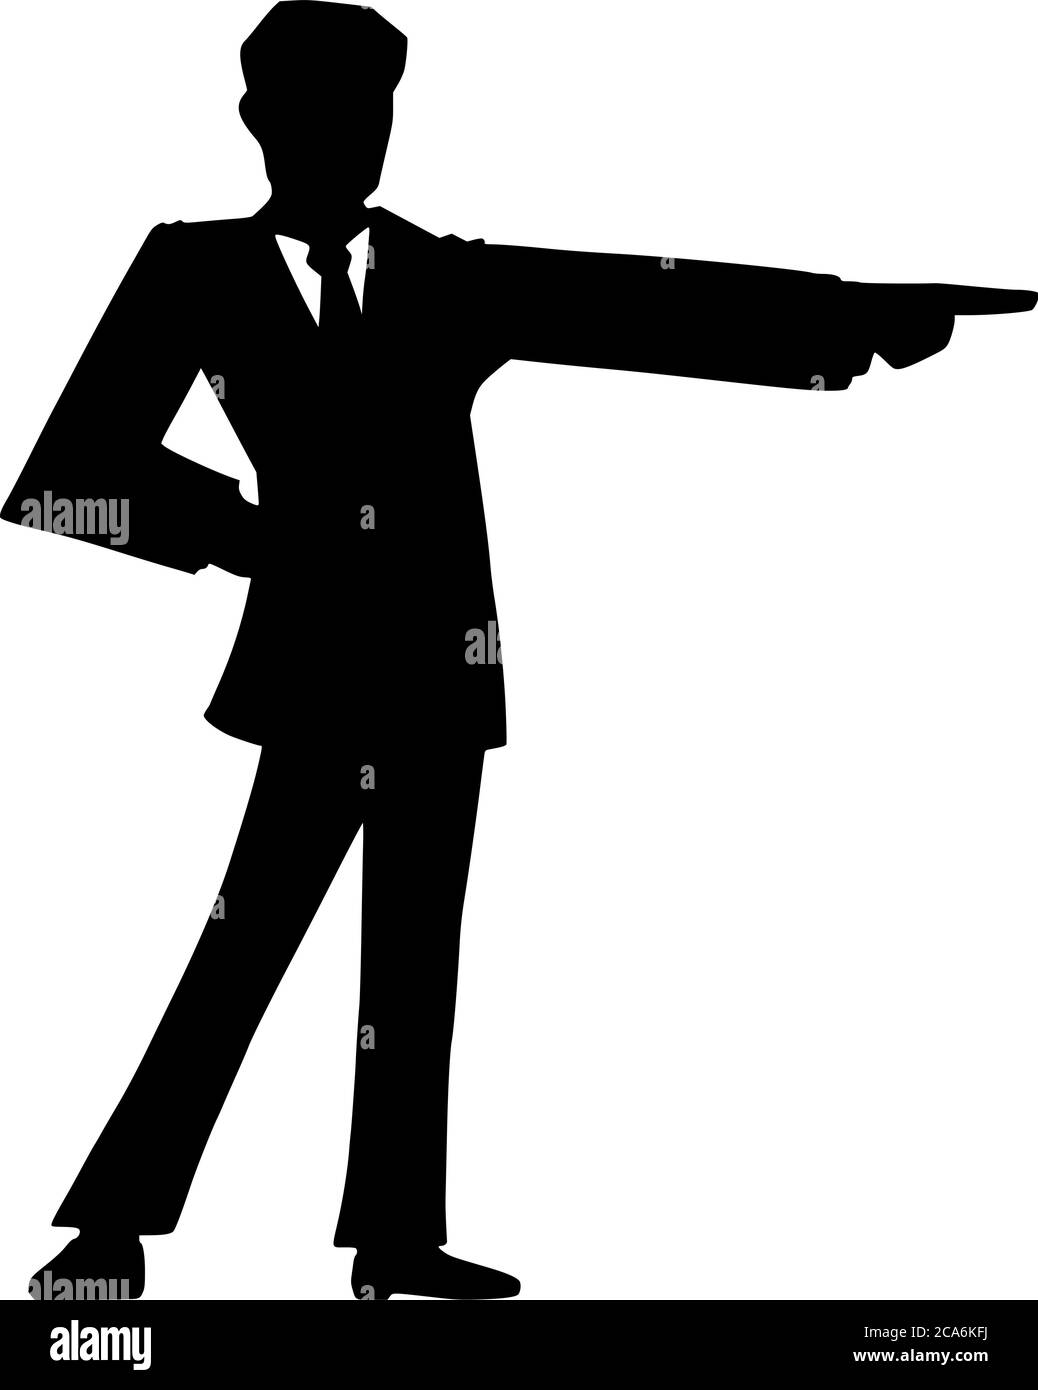 Dessin vectoriel de figure dessin de dessin conceptuel illustration de la silhouette noire de l'homme en costume ou homme d'affaires pointant, montrant ou présentant quelque chose. Illustration de Vecteur